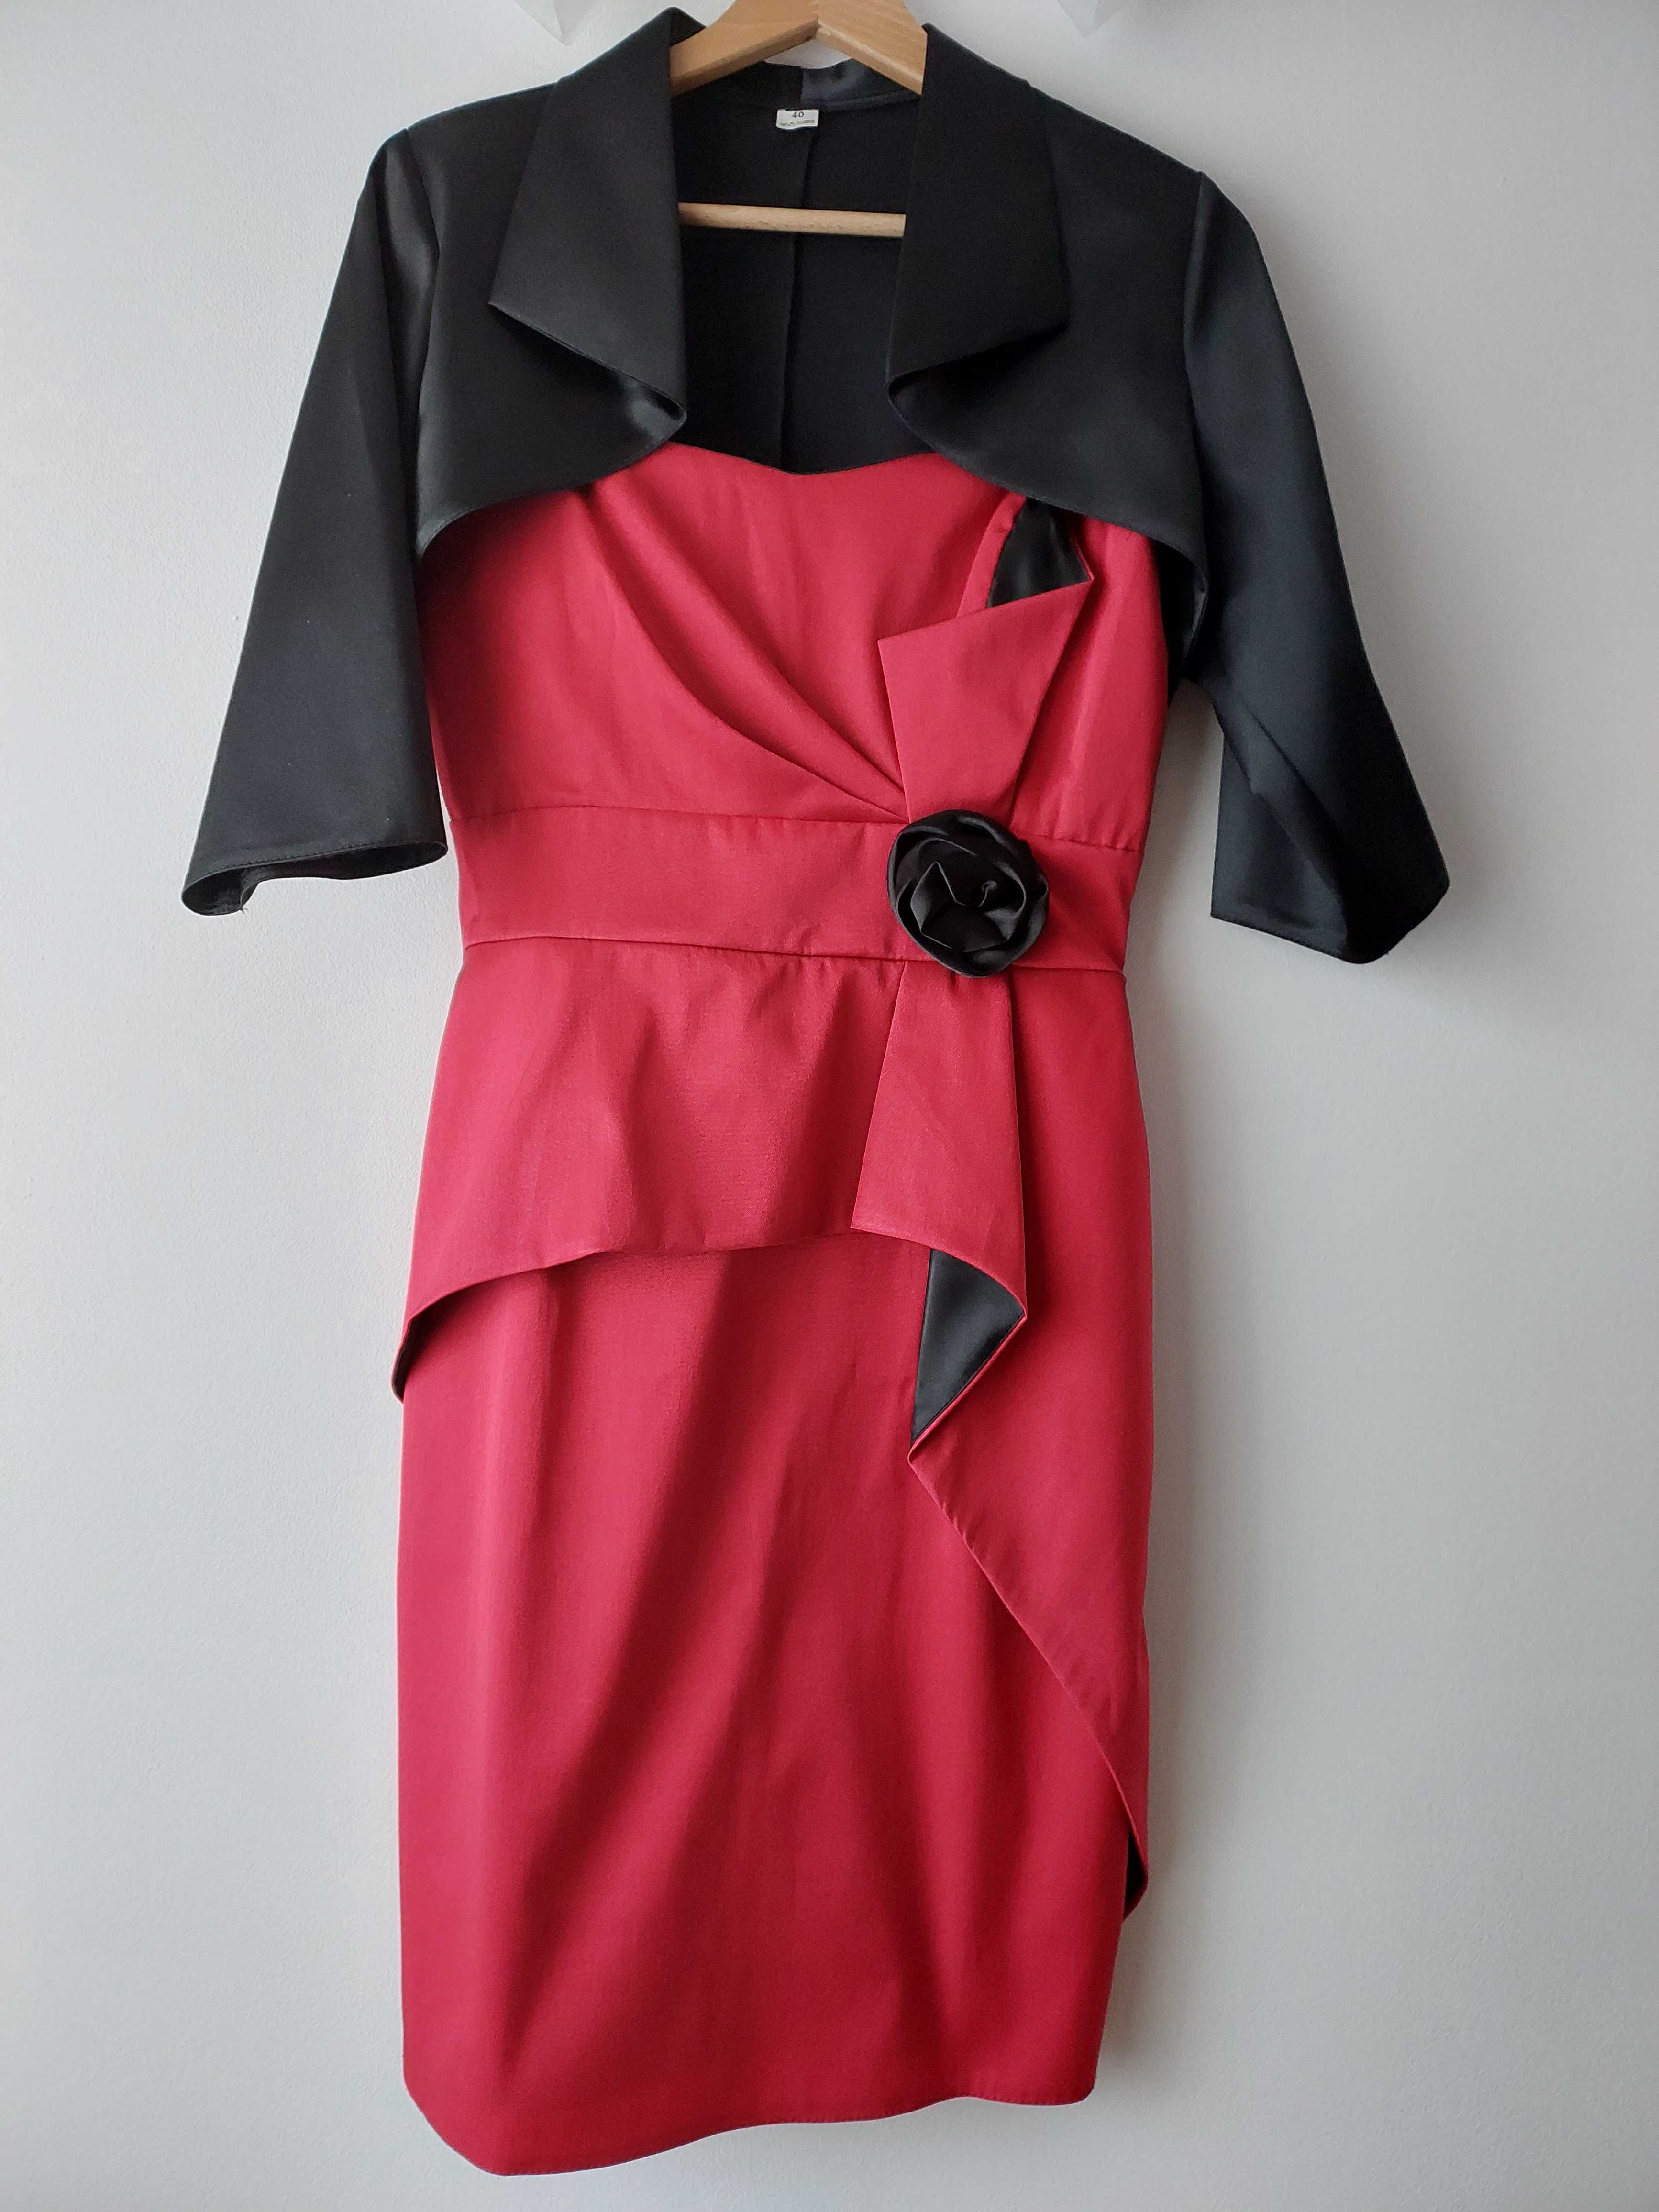 Elegancka sukienka czerwona czarna + bolerko na wesele, komunię.